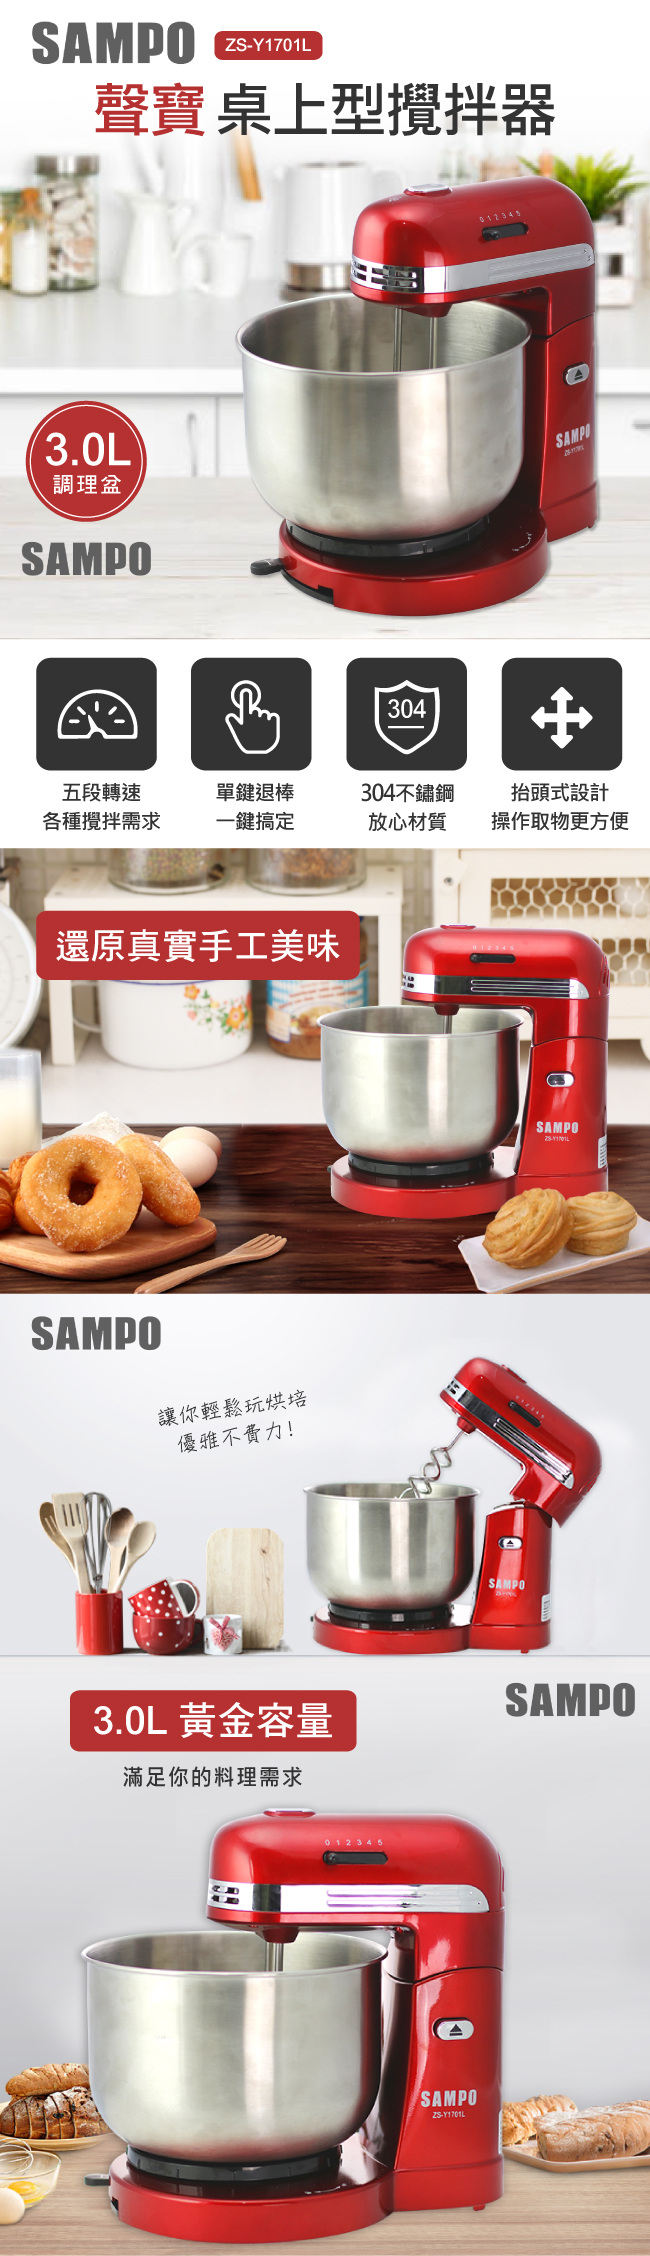 聲寶SAMPO-抬頭式桌上型攪拌器(ZS-Y1701L)-福利品